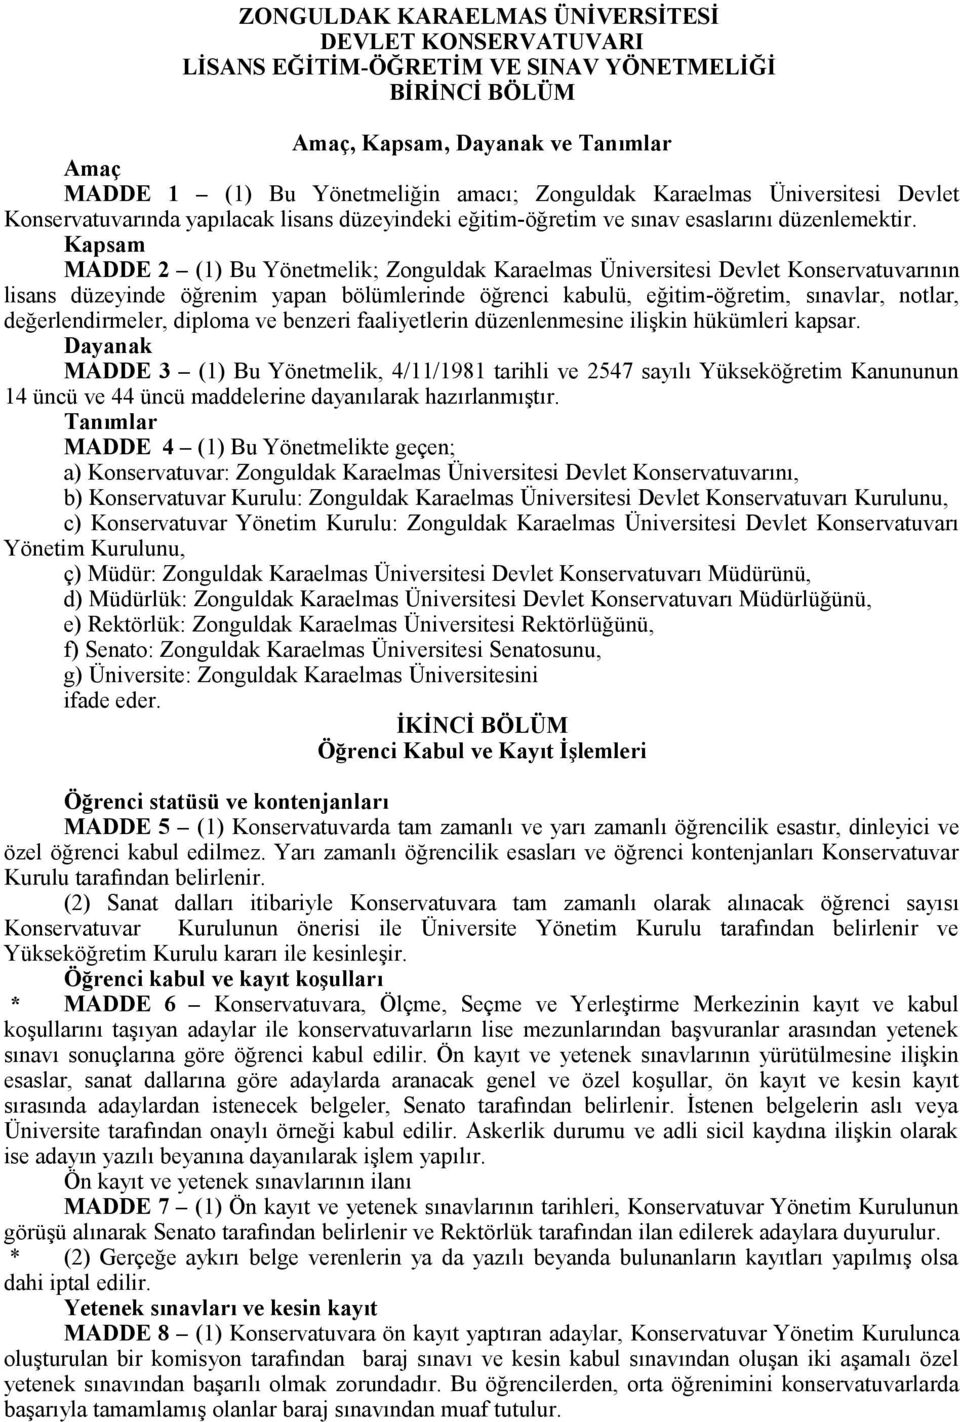 Kapsam MADDE 2 (1) Bu Yönetmelik; Zonguldak Karaelmas Üniversitesi Devlet Konservatuvarının lisans düzeyinde öğrenim yapan bölümlerinde öğrenci kabulü, eğitim-öğretim, sınavlar, notlar,